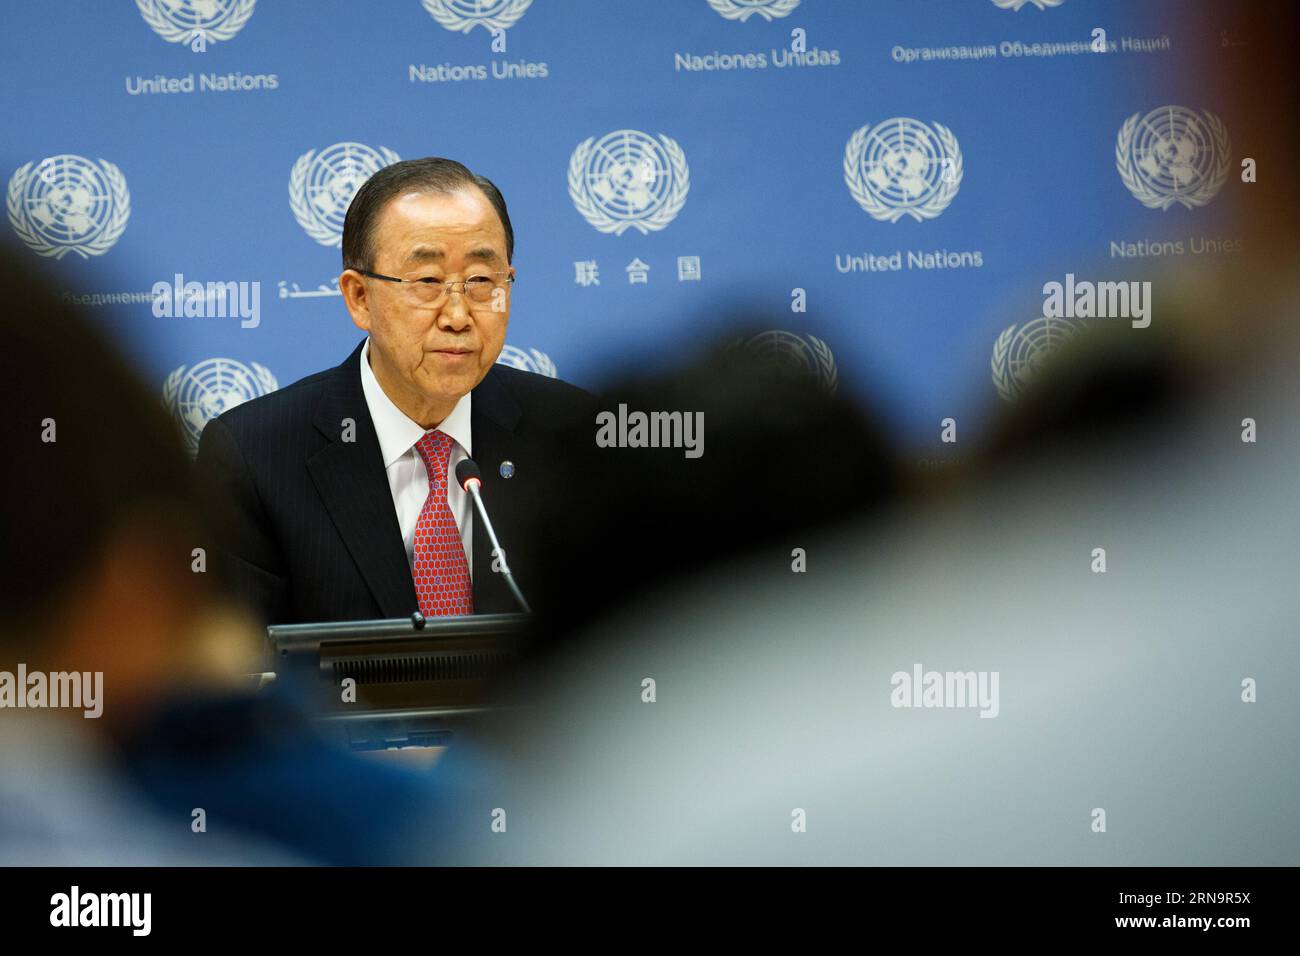 (151216) -- NEW YORK, 16. Dezember 2015 -- UN-Generalsekretär Ban Ki-moon spricht während der Year-End-Pressekonferenz im UN-Hauptquartier in New York, 16. Dezember 2015. Ban Ki-moon sagte hier am Mittwoch, dass am Freitag in New York eine neue Runde internationaler Gespräche in Syrien stattfinden werde, um eine politische Lösung für den seit langem bestehenden syrischen Konflikt zu finden, der im März 2011 ausbrach. ) UN-NEW YORK-BAN KI-MOON-PRESS CONFERENCE-SYRIA INTERNATIONAL TALKS LixMuzi PUBLICATIONxNOTxINxCHN 151216 New York DEZ 16 2015 Generalsekretär der Vereinten Nationen Ban KI Moon spricht während des Jahresendes Stockfoto